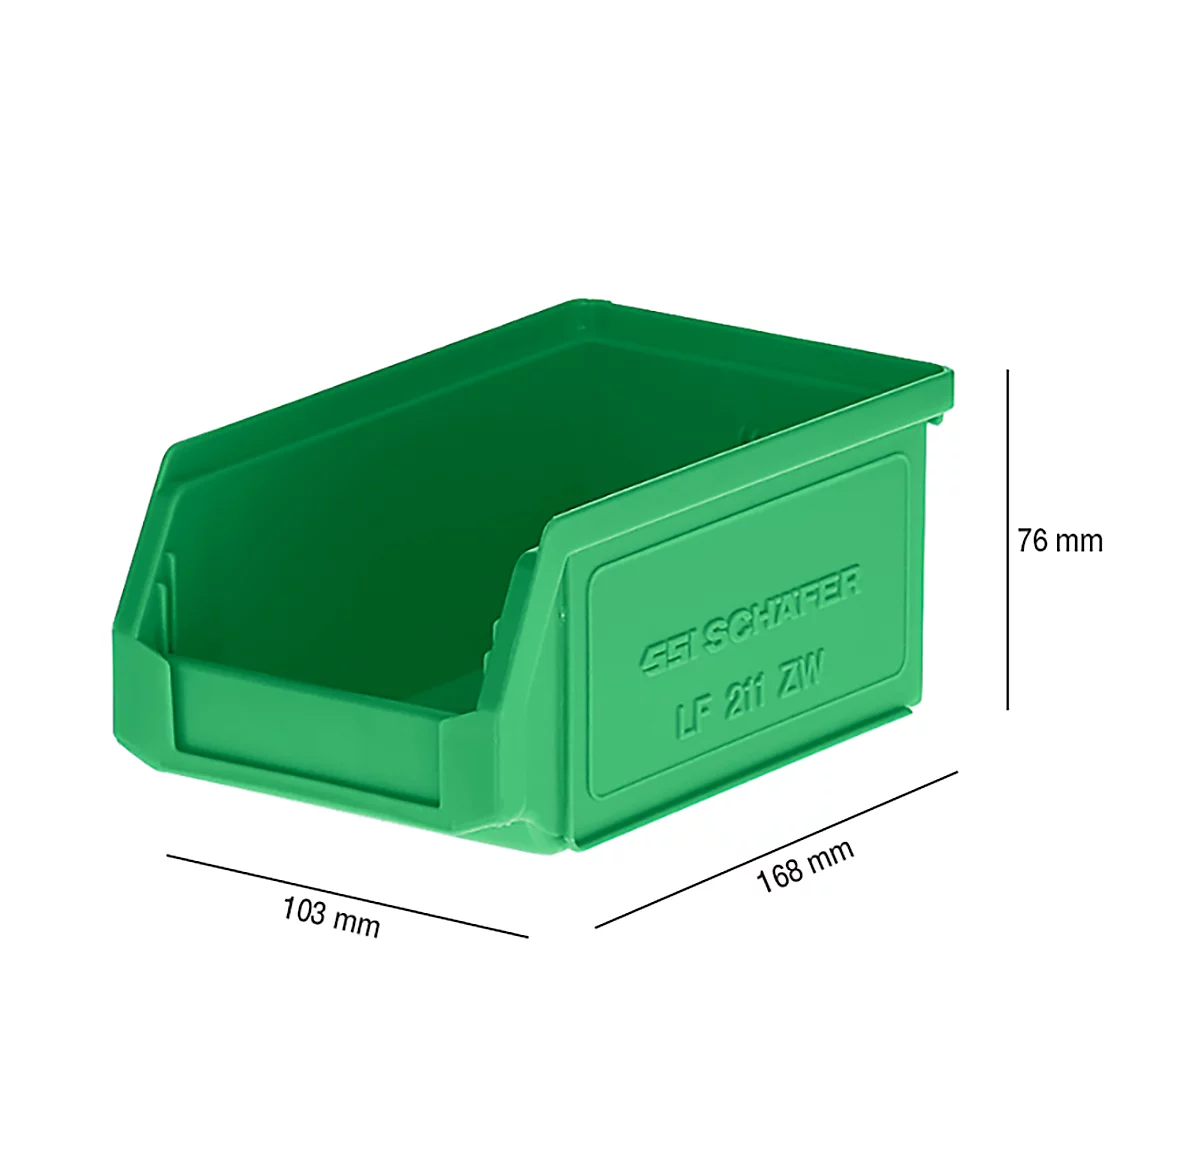 SSI Schäfer LF 211 cubo de basura abierto, plástico, 0,9 l, verde